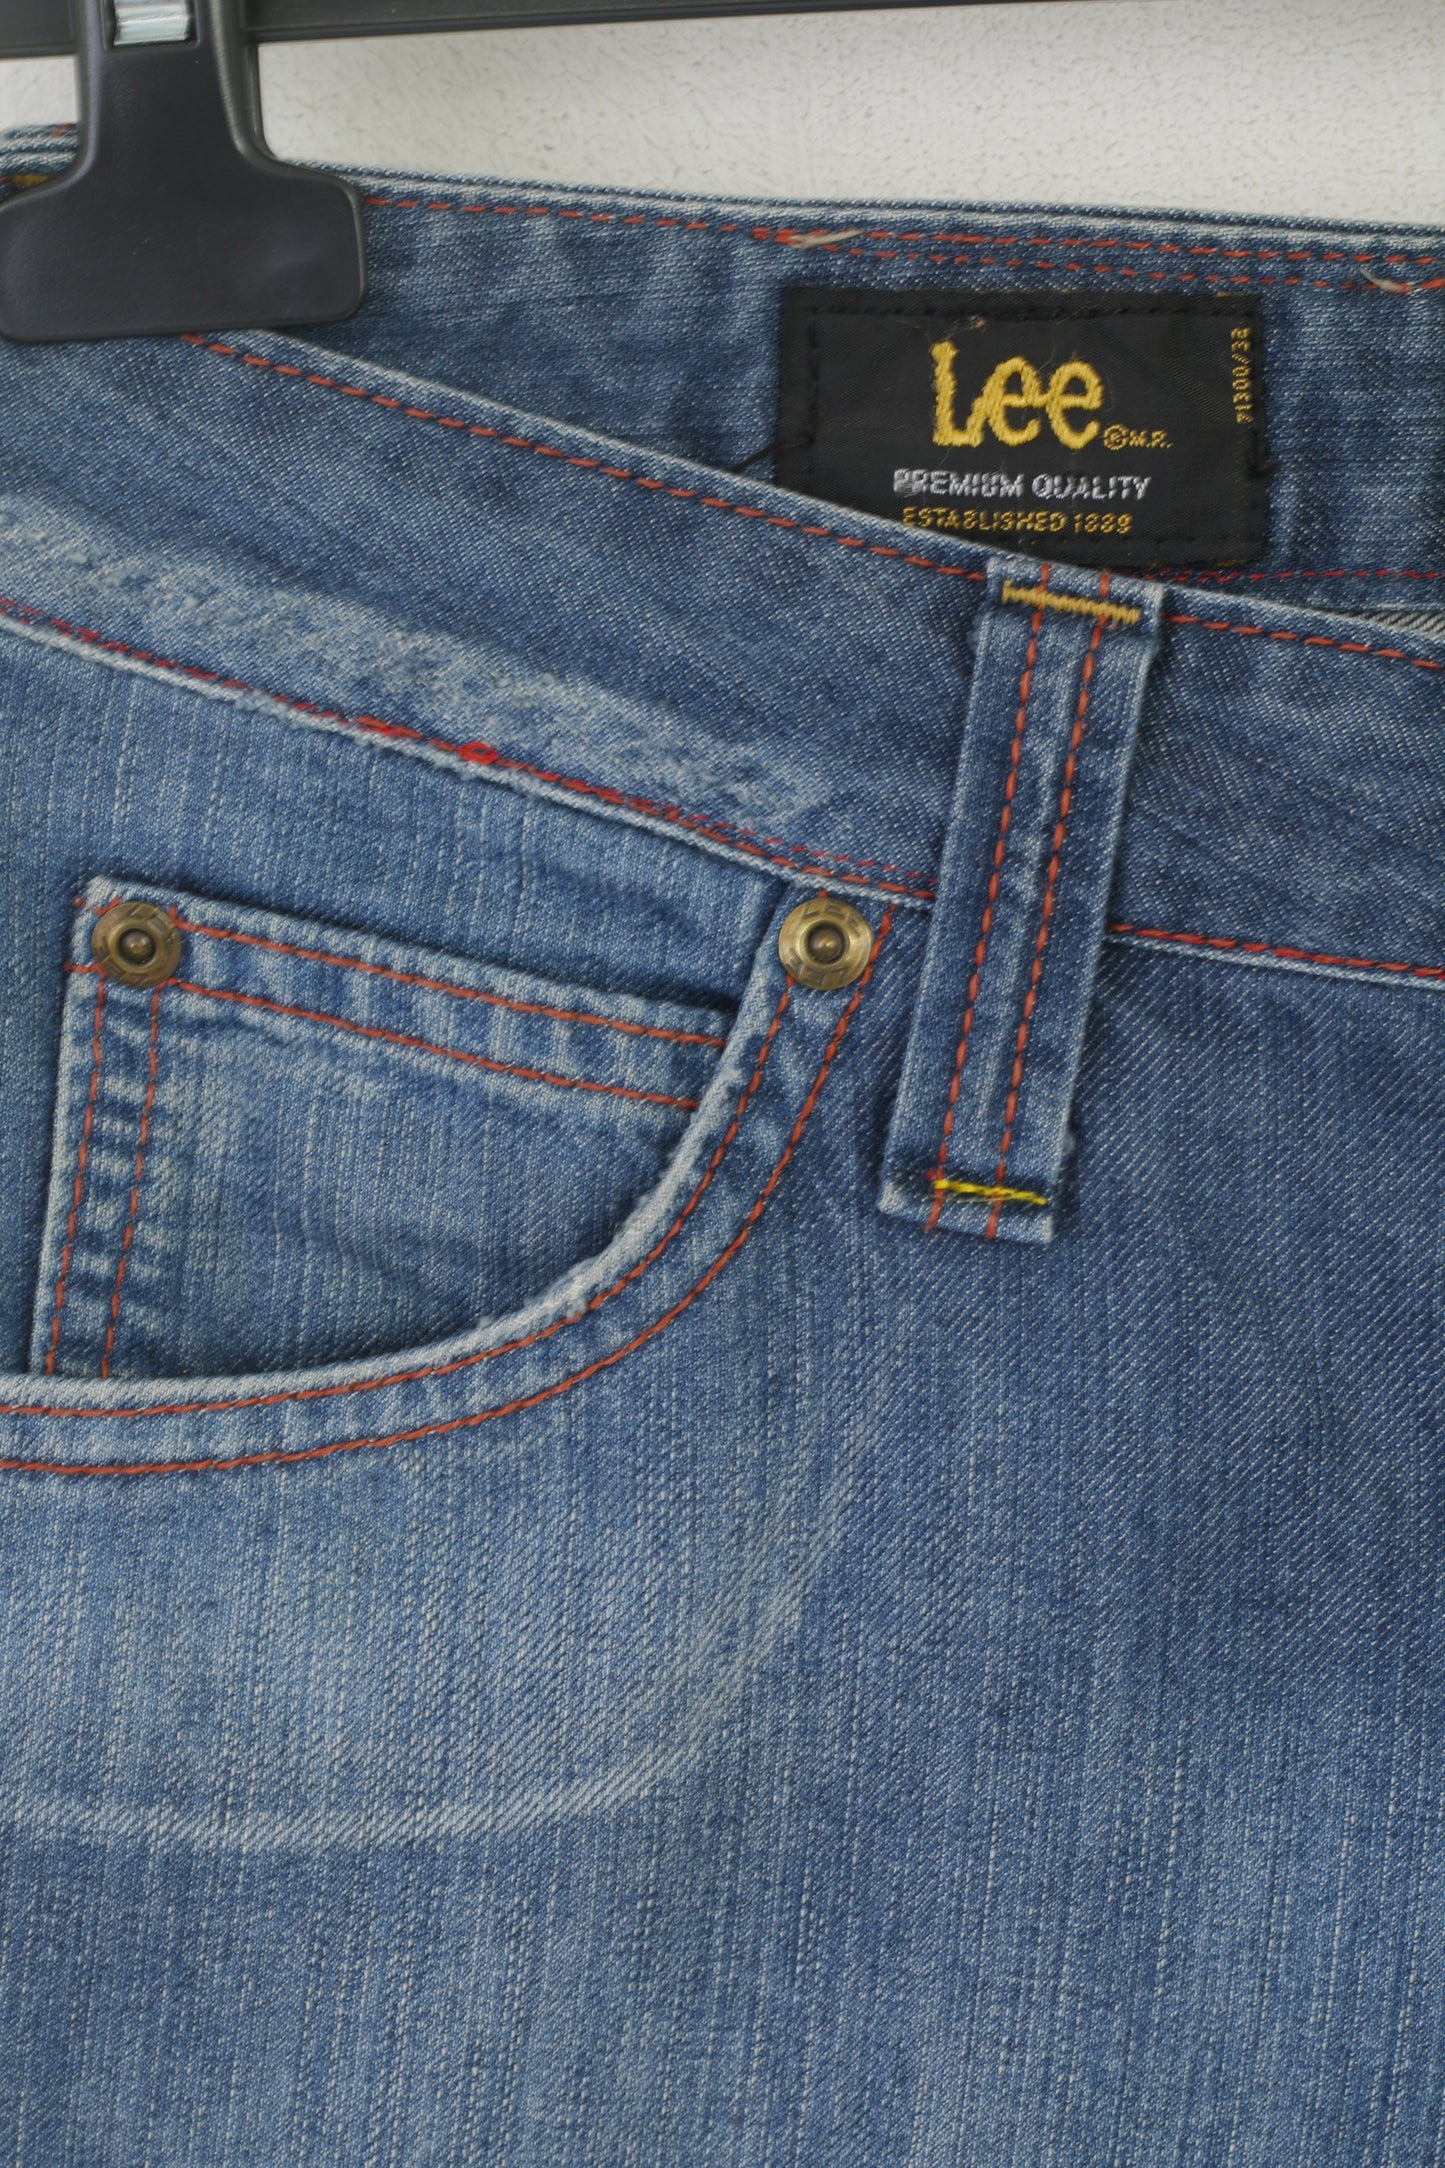 Lee Women 28 Jeans Trousers Blue Denim Cotton Straight Cropped Vintage Pants